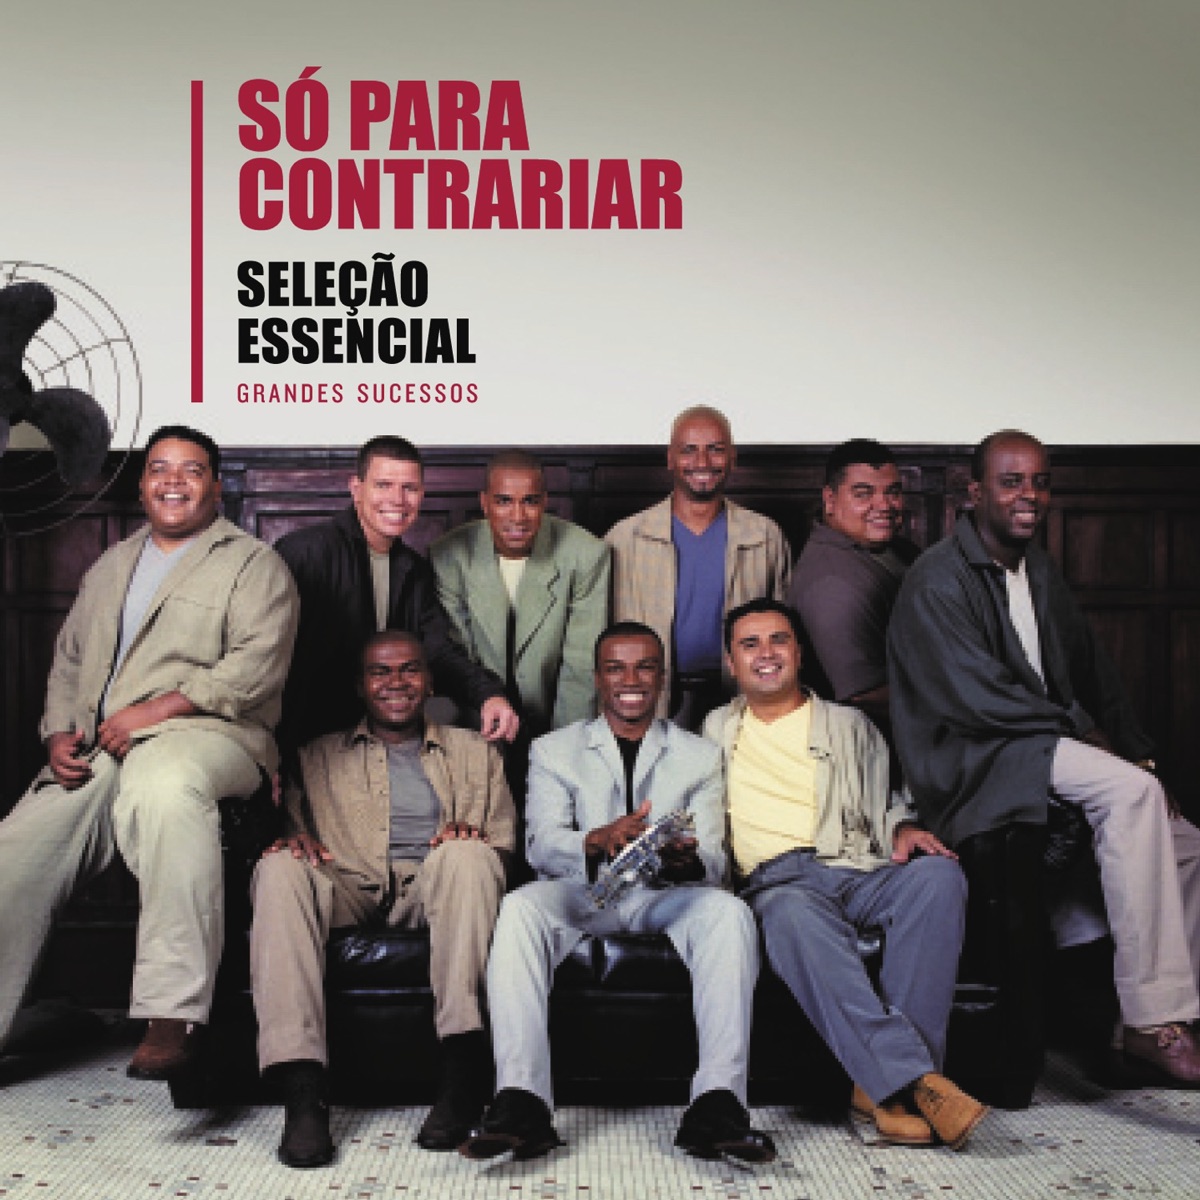 Só Pra Contrariar CD 25 Anos Ao Vivo Em Porto Alegre Vol. 2 Made In Brazil